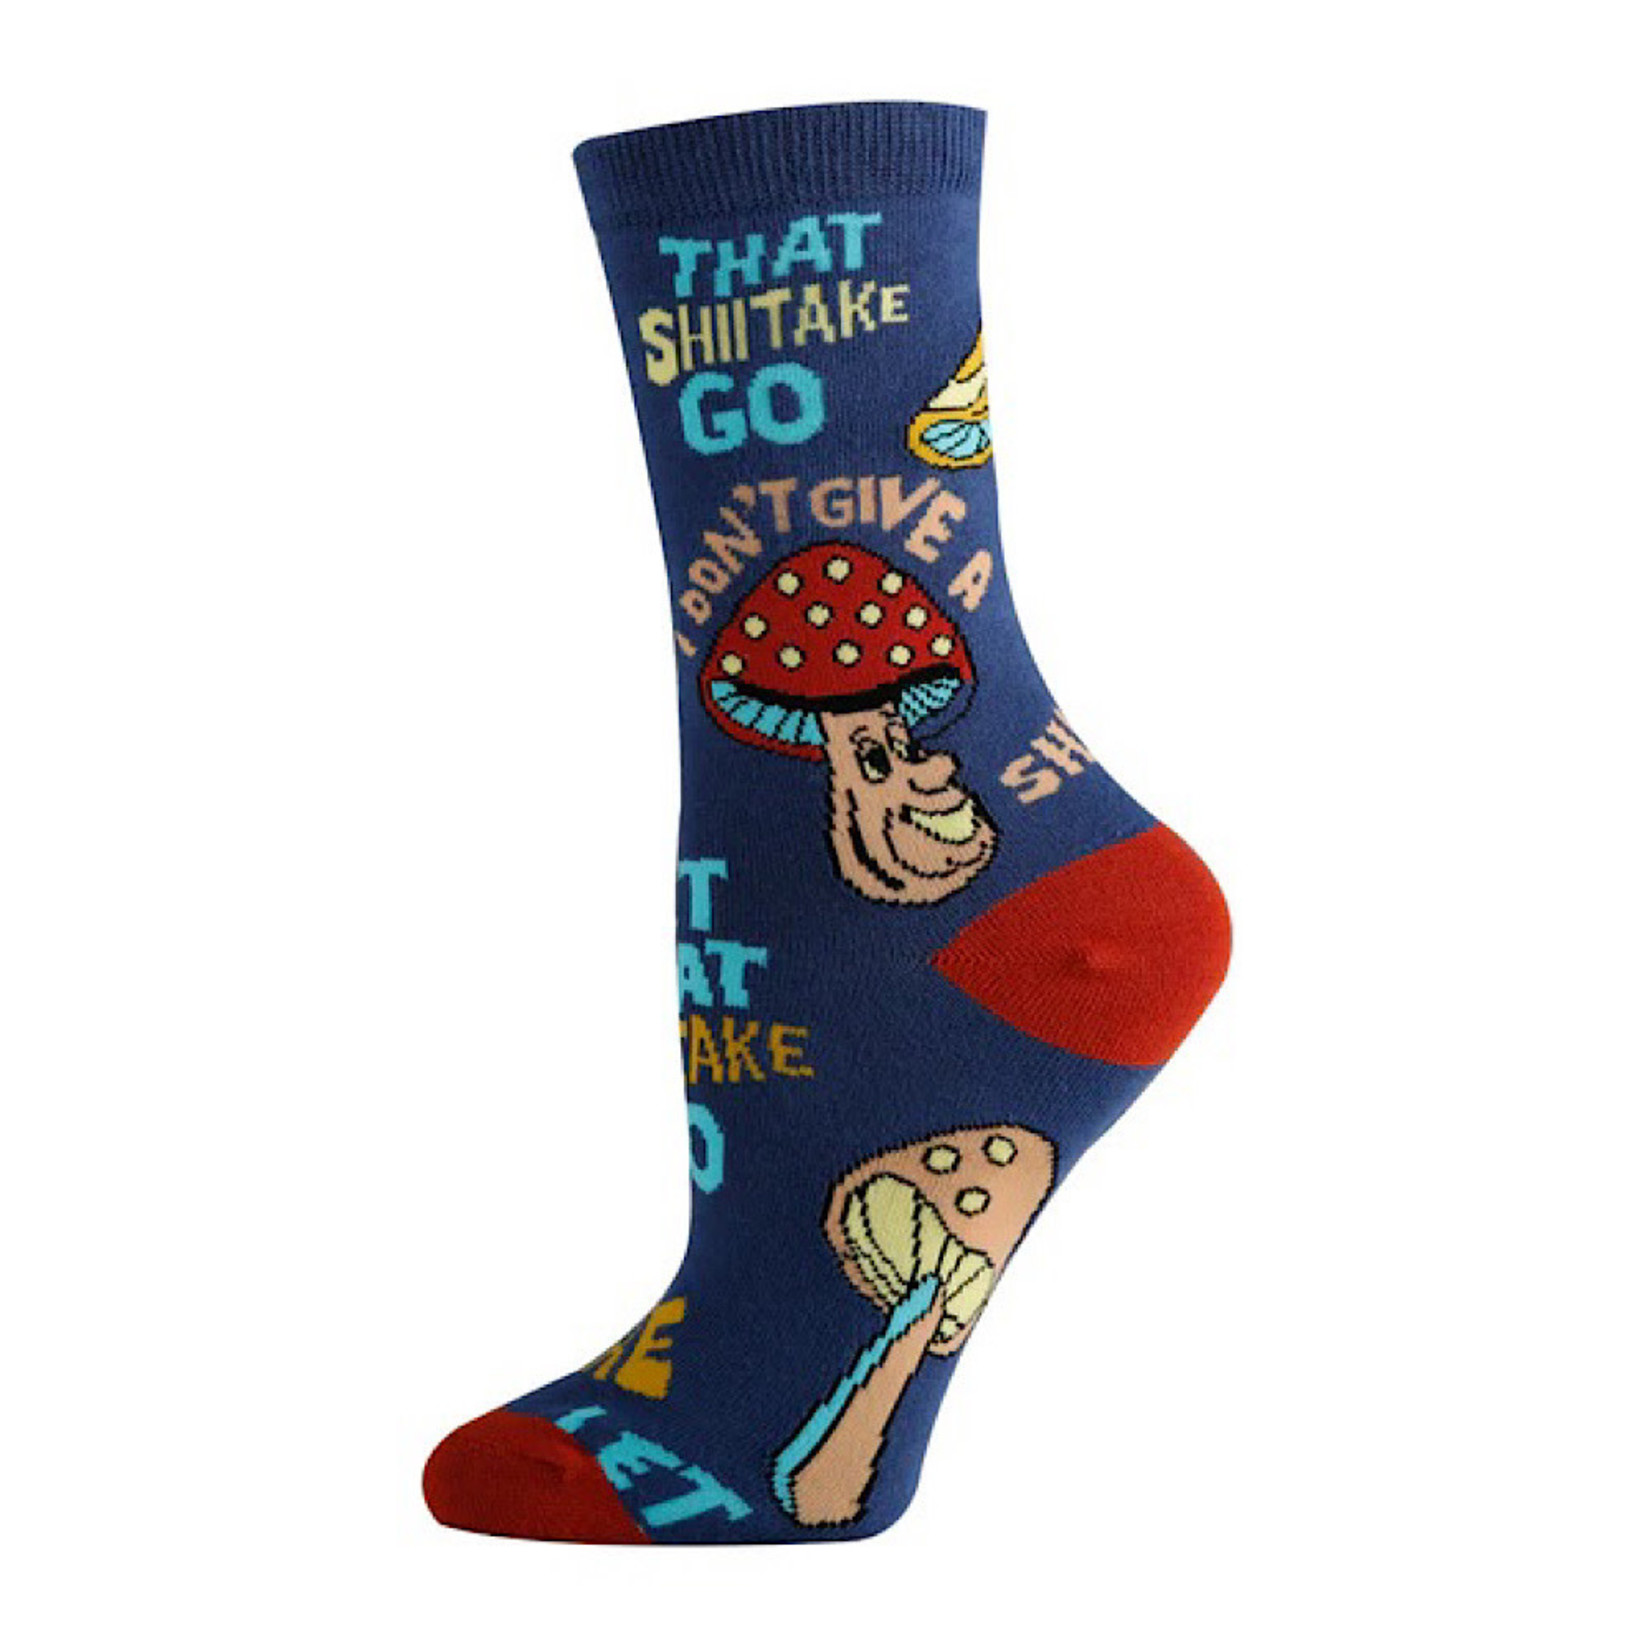 Socks (Womens) - Let That Shiitake Go (Mushrooms)